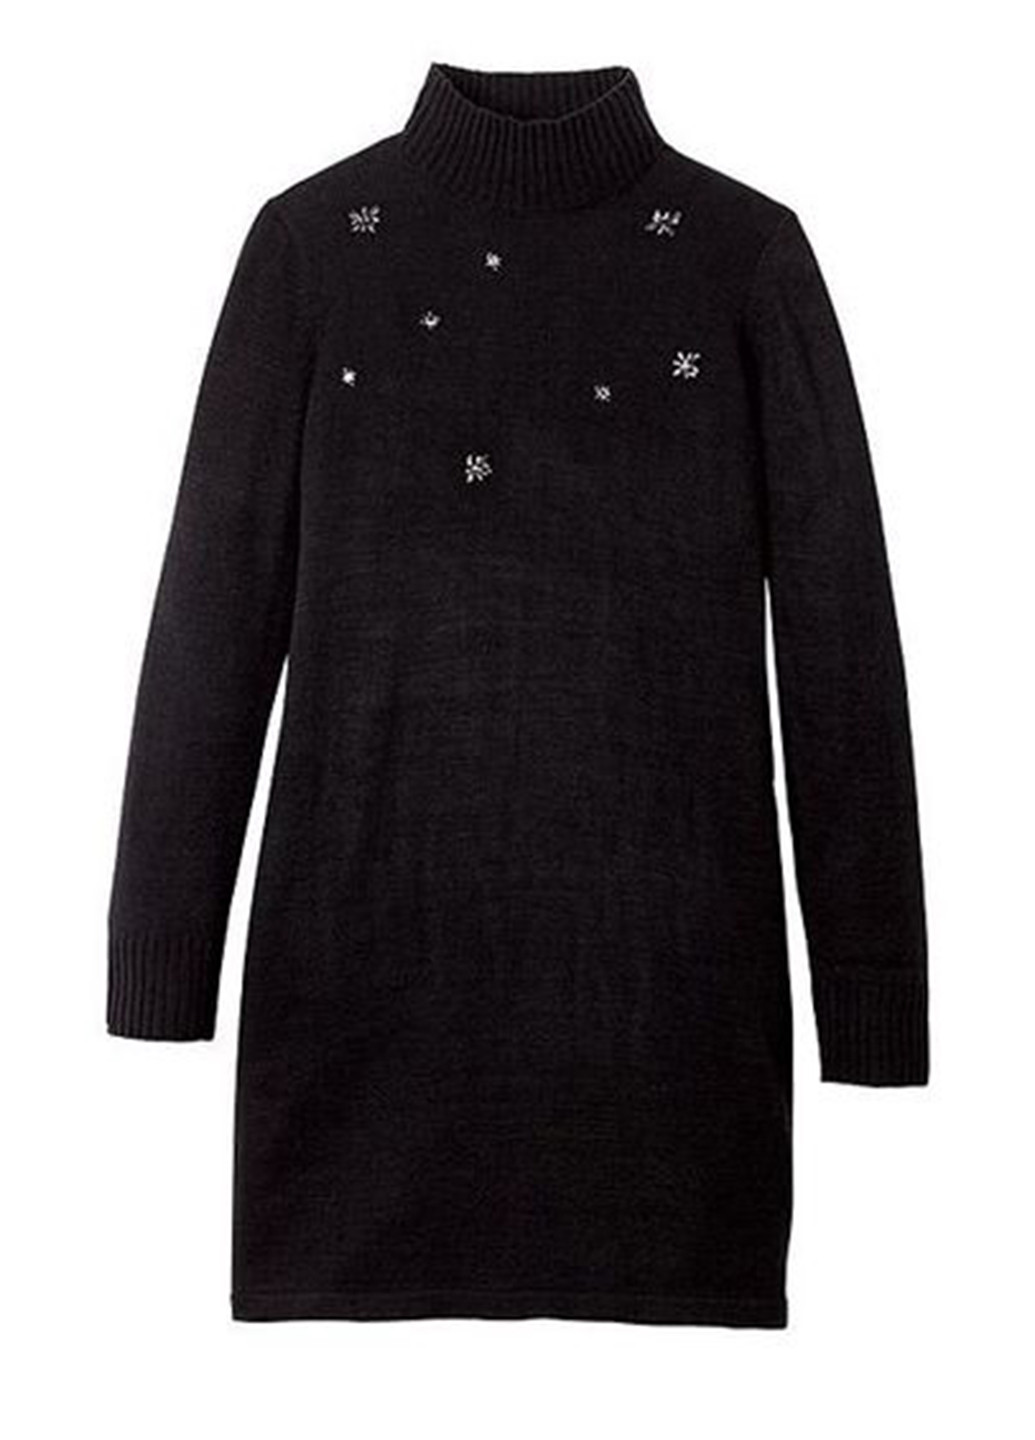 Черное кэжуал платье платье-водолазка, платье-свитер Signature Collection однотонное